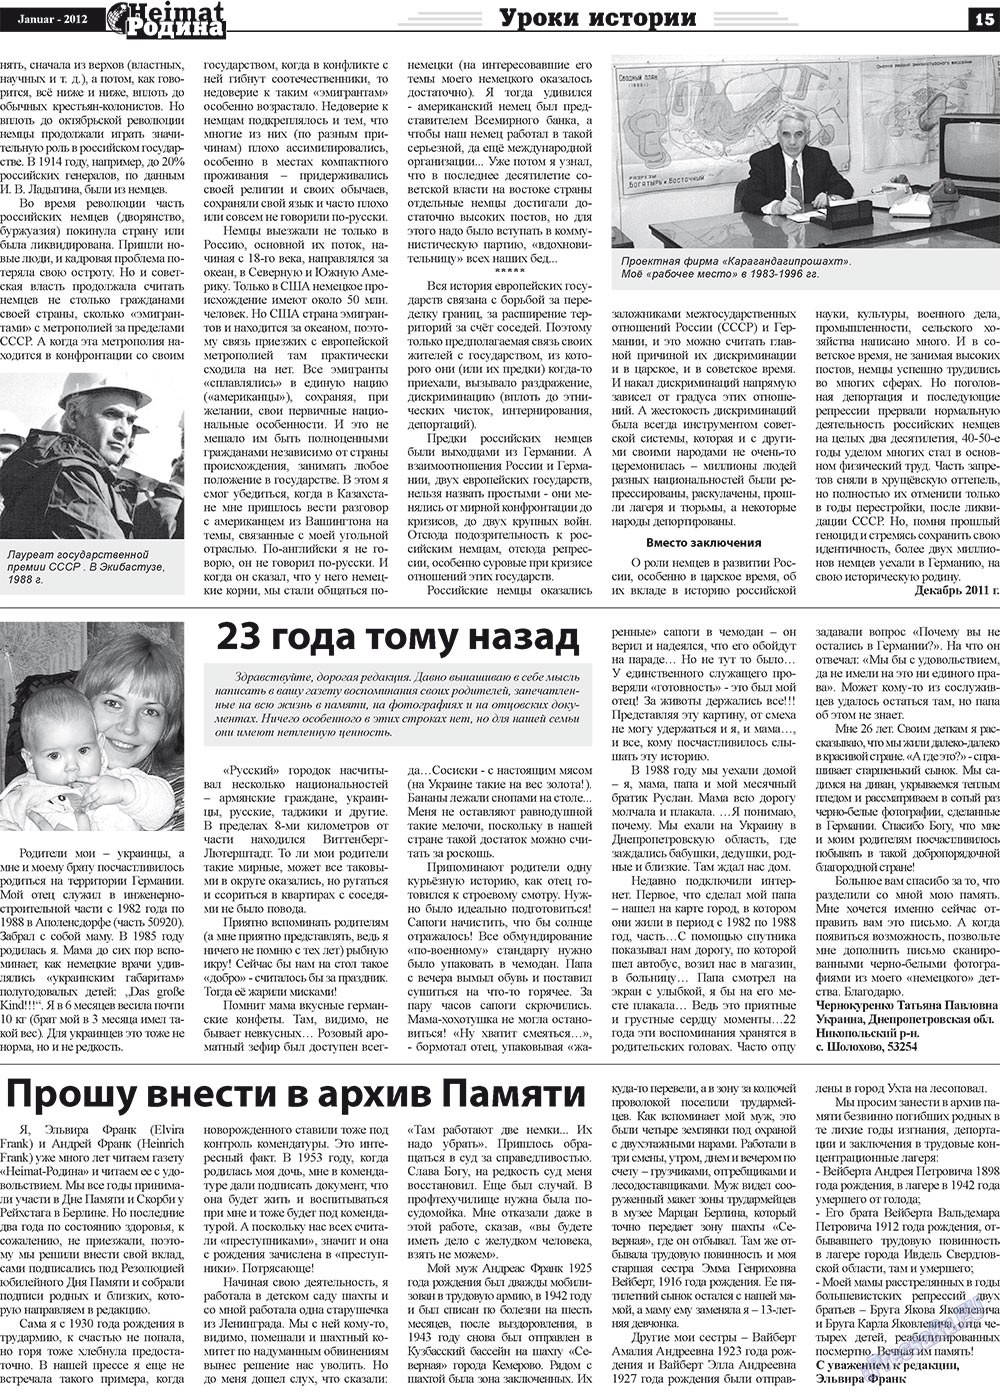 Heimat-Родина (Zeitung). 2012 Jahr, Ausgabe 1, Seite 15